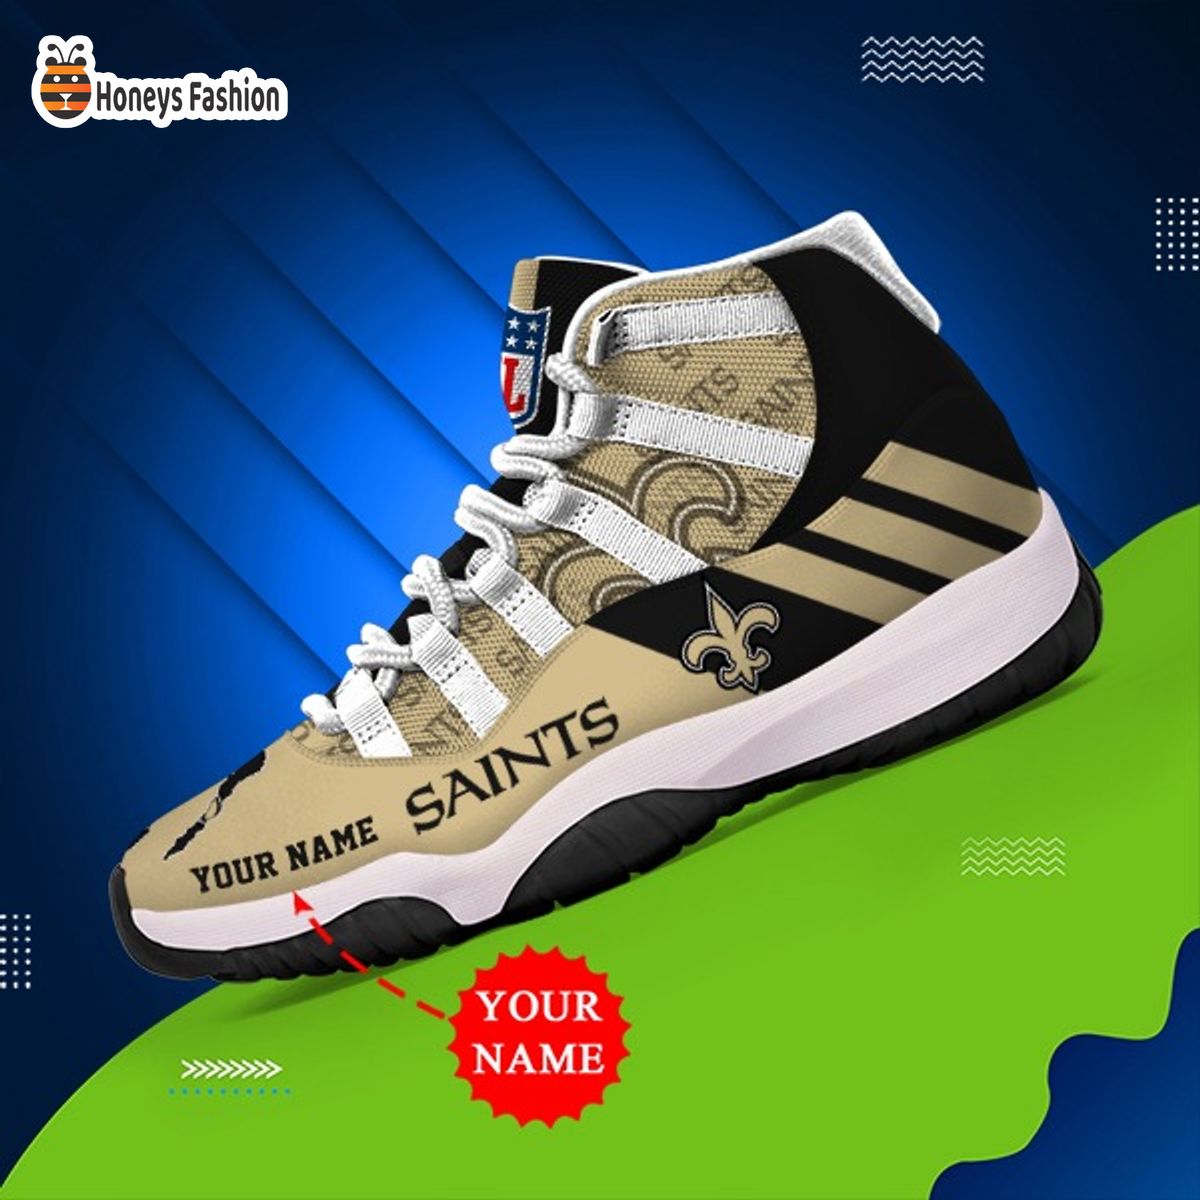 New Orleans Saints NFL Adidas Personalized Air Jordan 11 Shoes